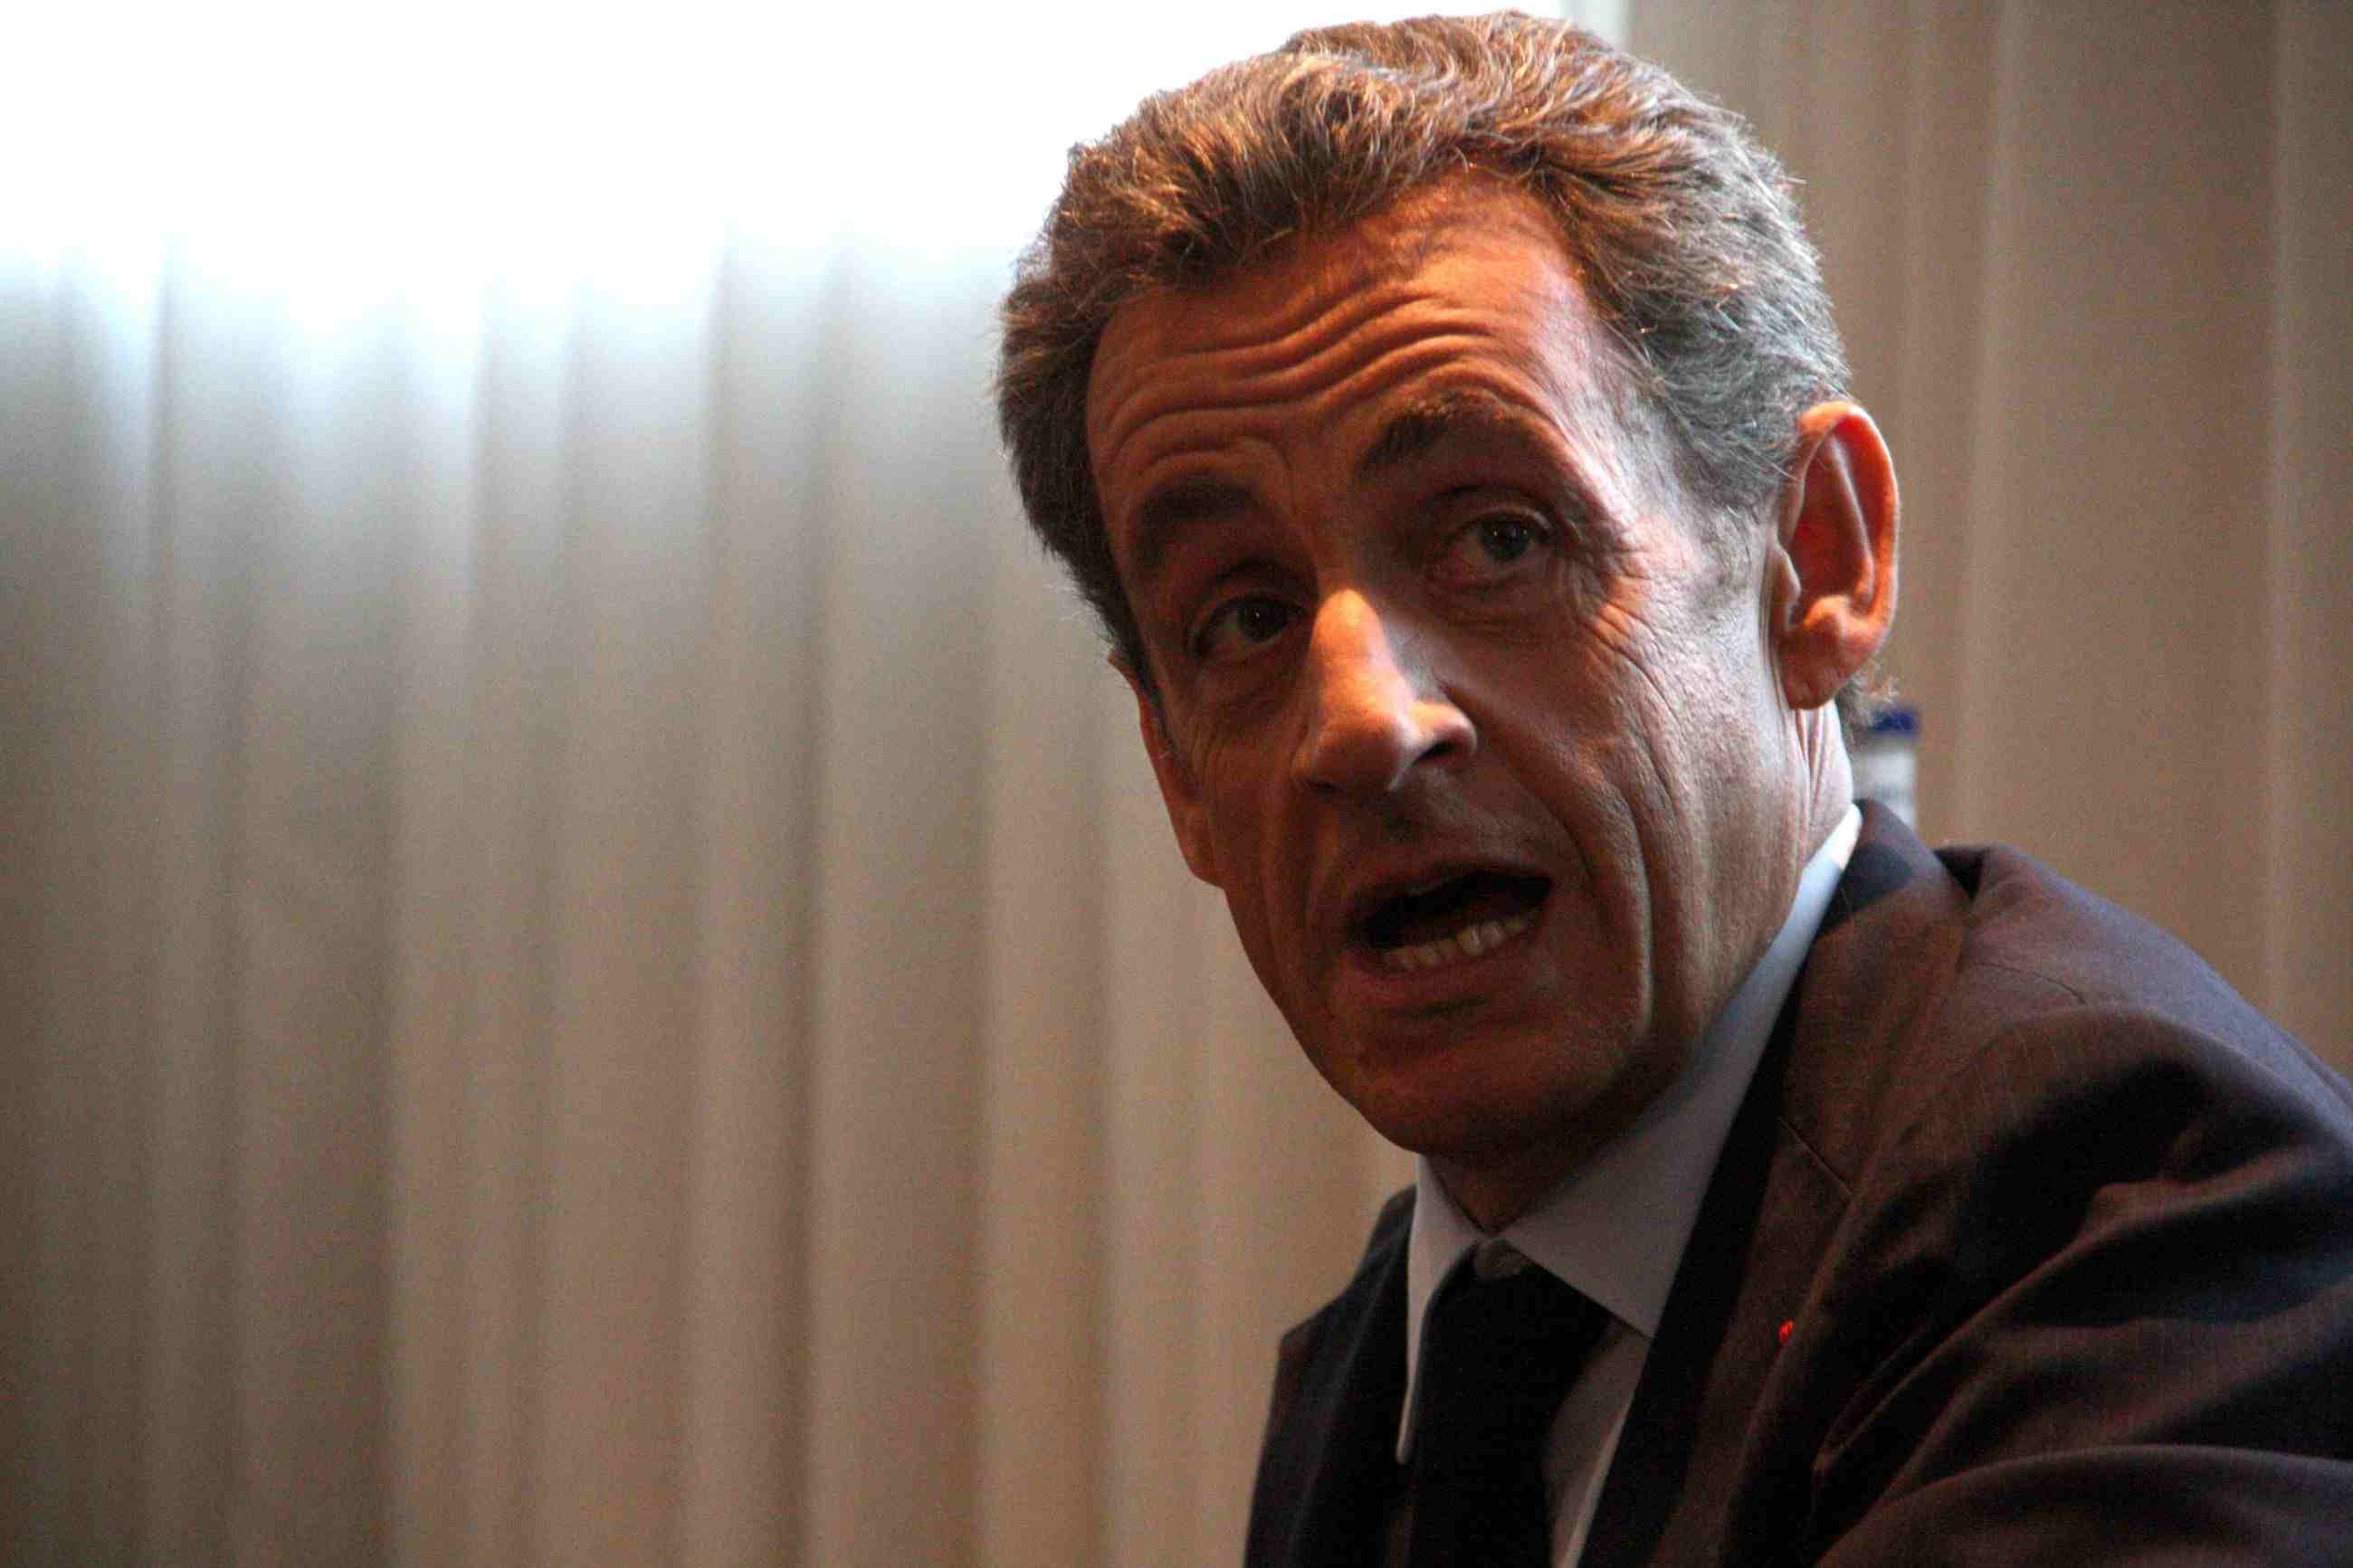 Sarkozy, condenado a 3 años de prisión por corrupción y tráfico de influencias